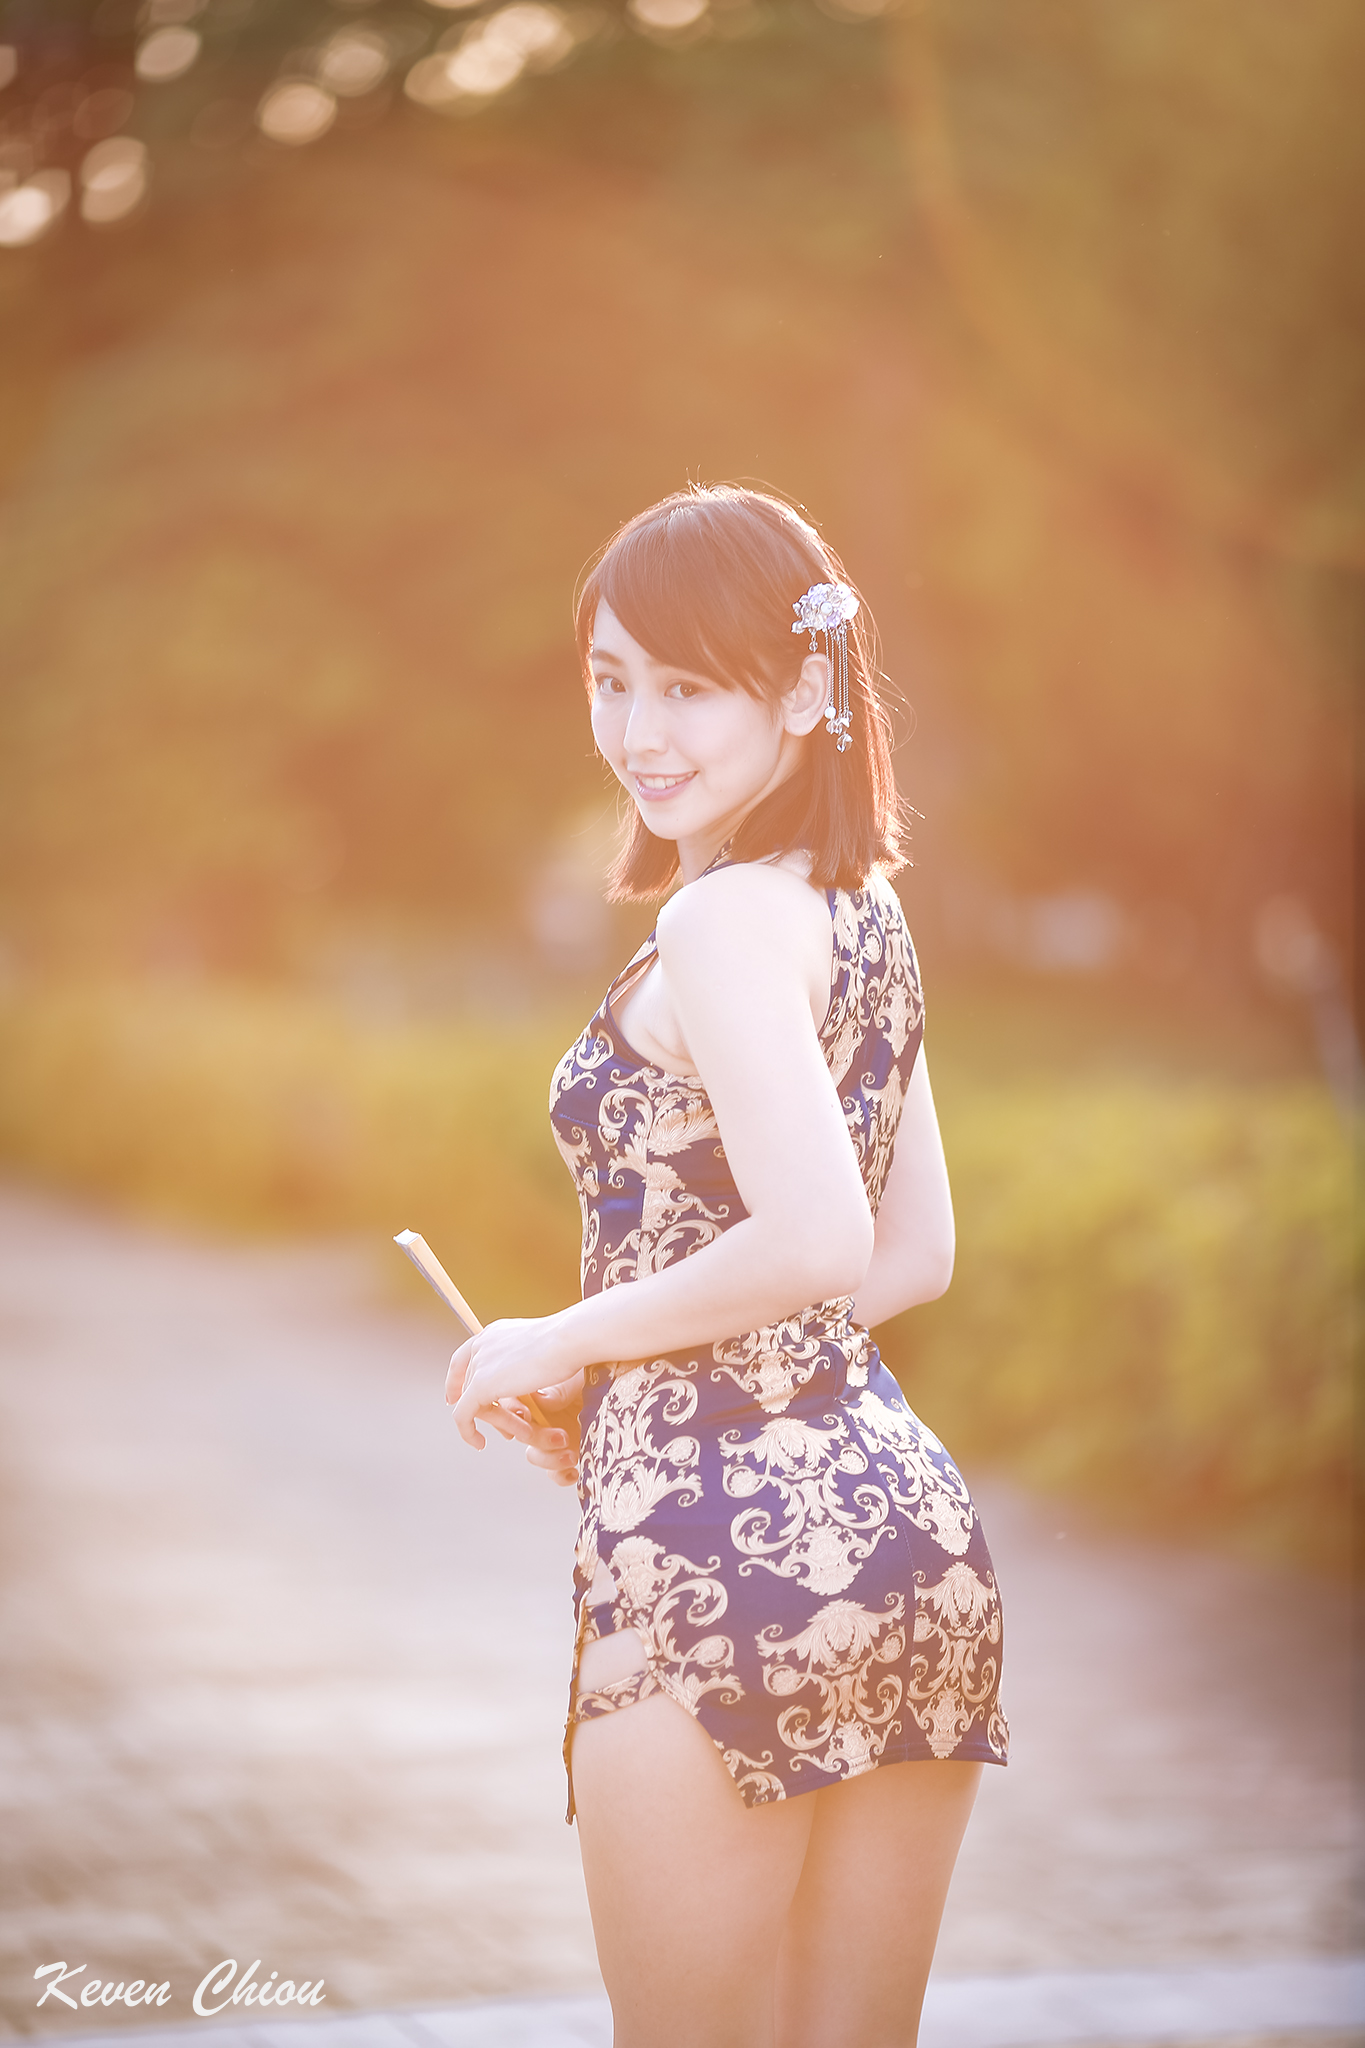 Ccplay1211 Women Model Asian Cheongsam Dress Portrait Display Outdoors Women Outdoors 1365x2048